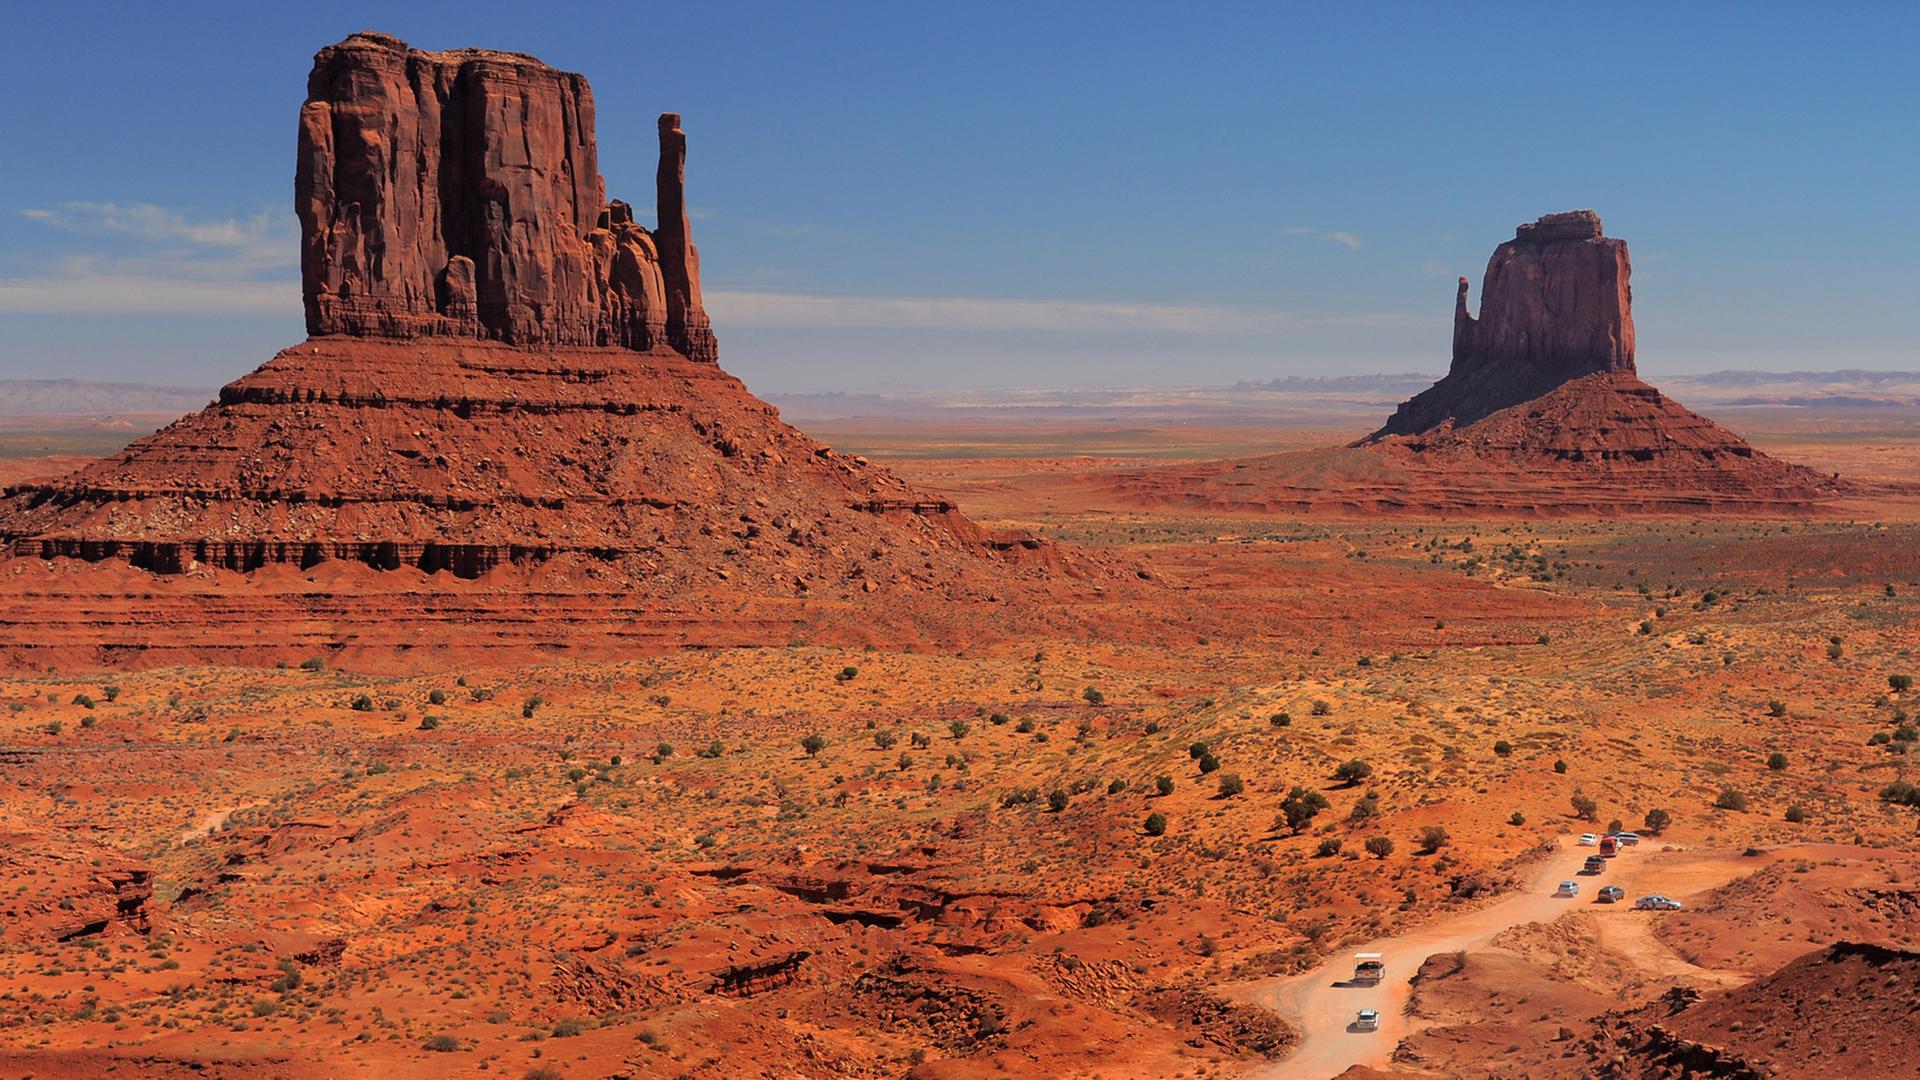 Der Monument Valley Navajo Tribal Park im Norden von Arizona gehört neben dem Grand Canyon zu den bekanntesten Touristenzielen im Südwesten der USA. Die freistehenden 300 Meter hohen Sandsteinmonolithe wurden berühmt als Naturkulisse für zahlreiche Westernfilme.